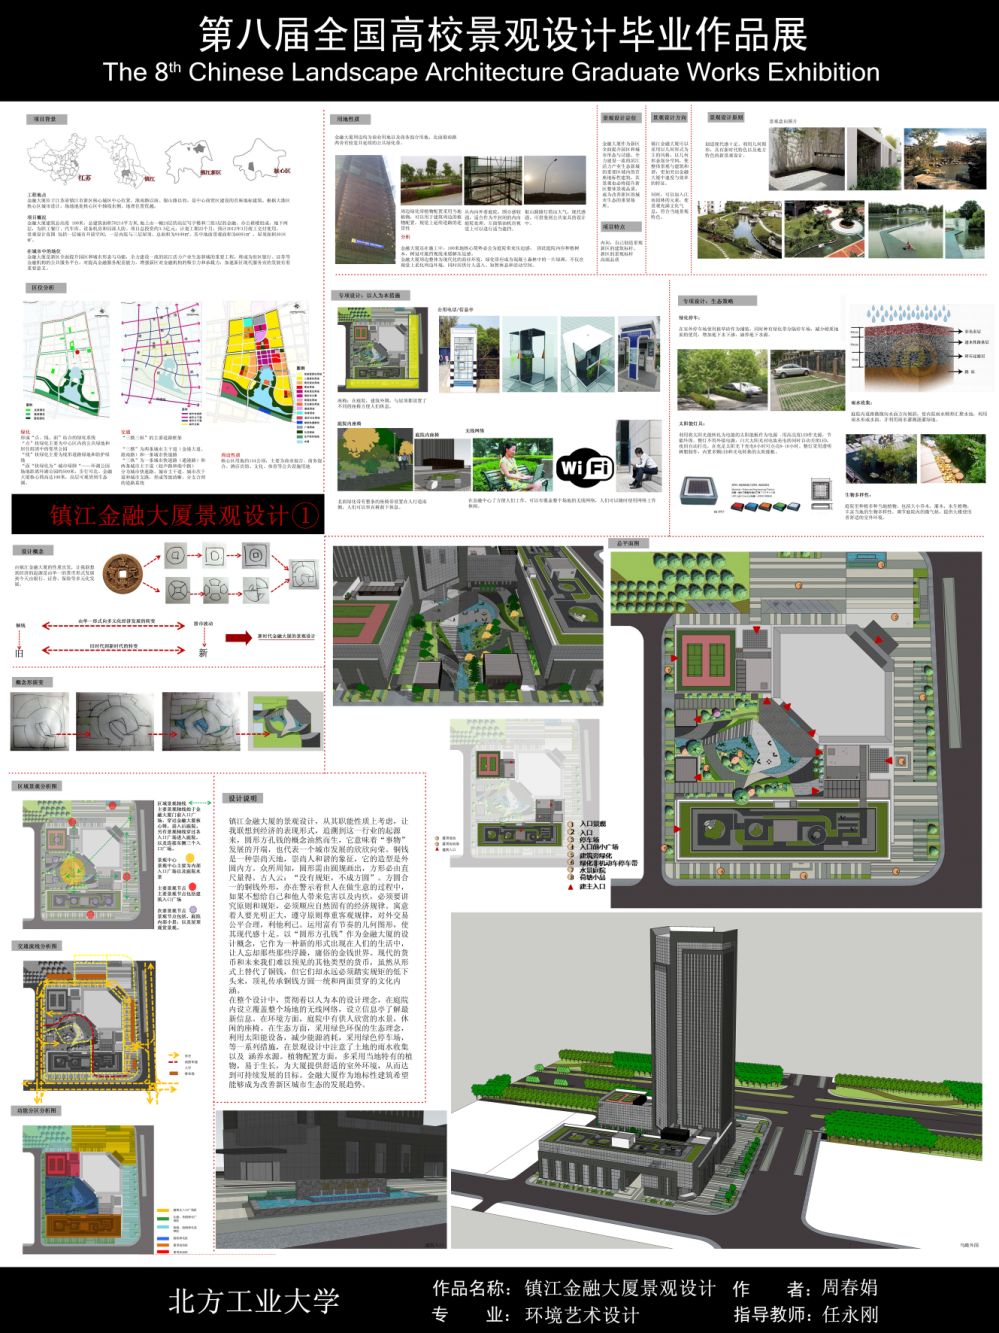 大新河公园三角绿地湿地景观规划设计-1